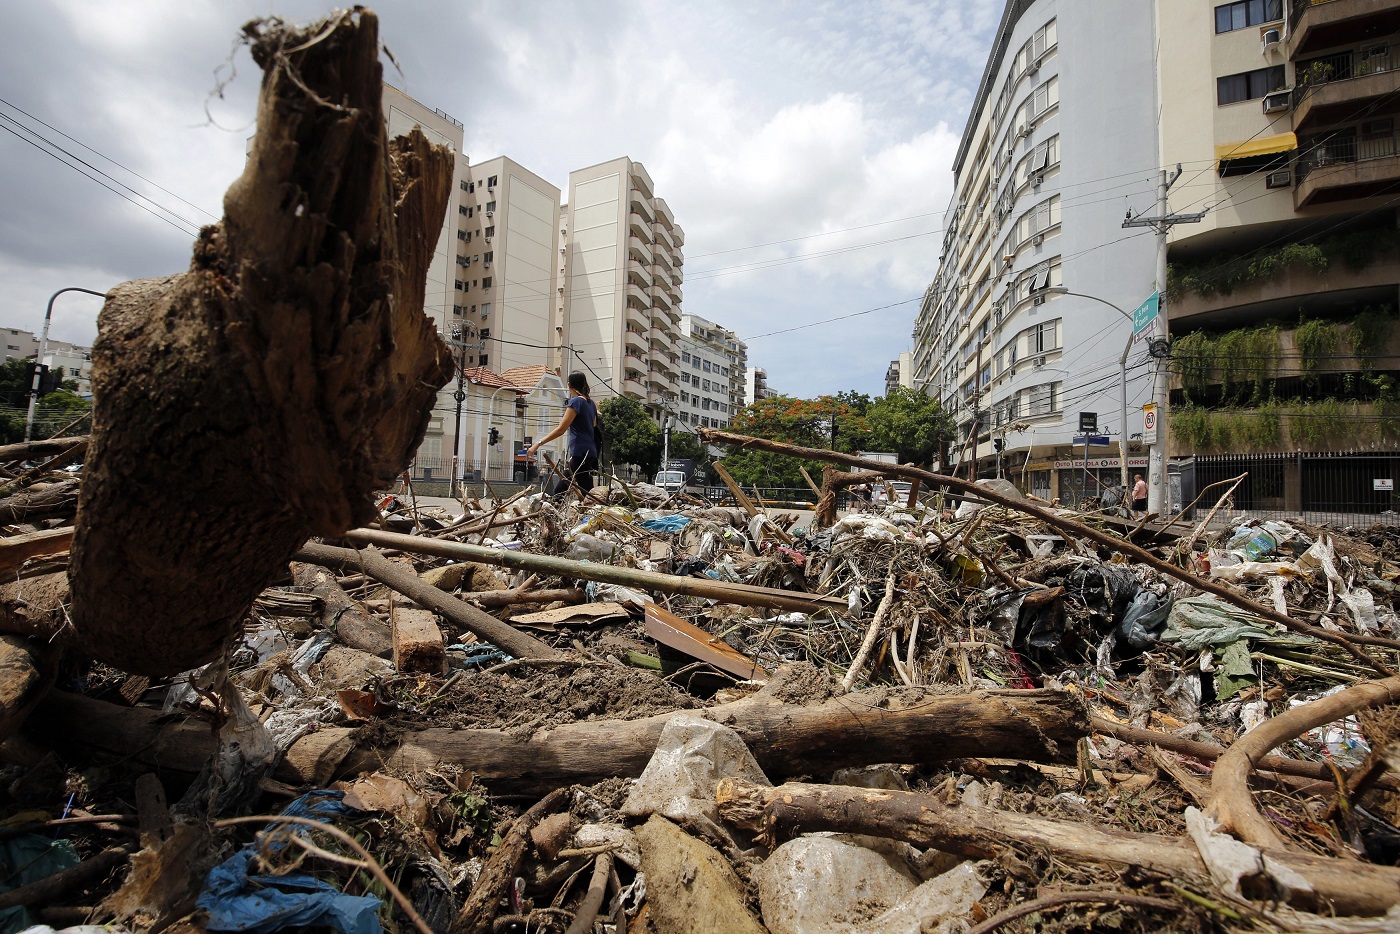 Lixo retirado do Rio Maracanã, na esquina da Avenida Maracanã com a Rua Uruguai, na Tijuca. Foto Marcos de Paula /Agência O Globo